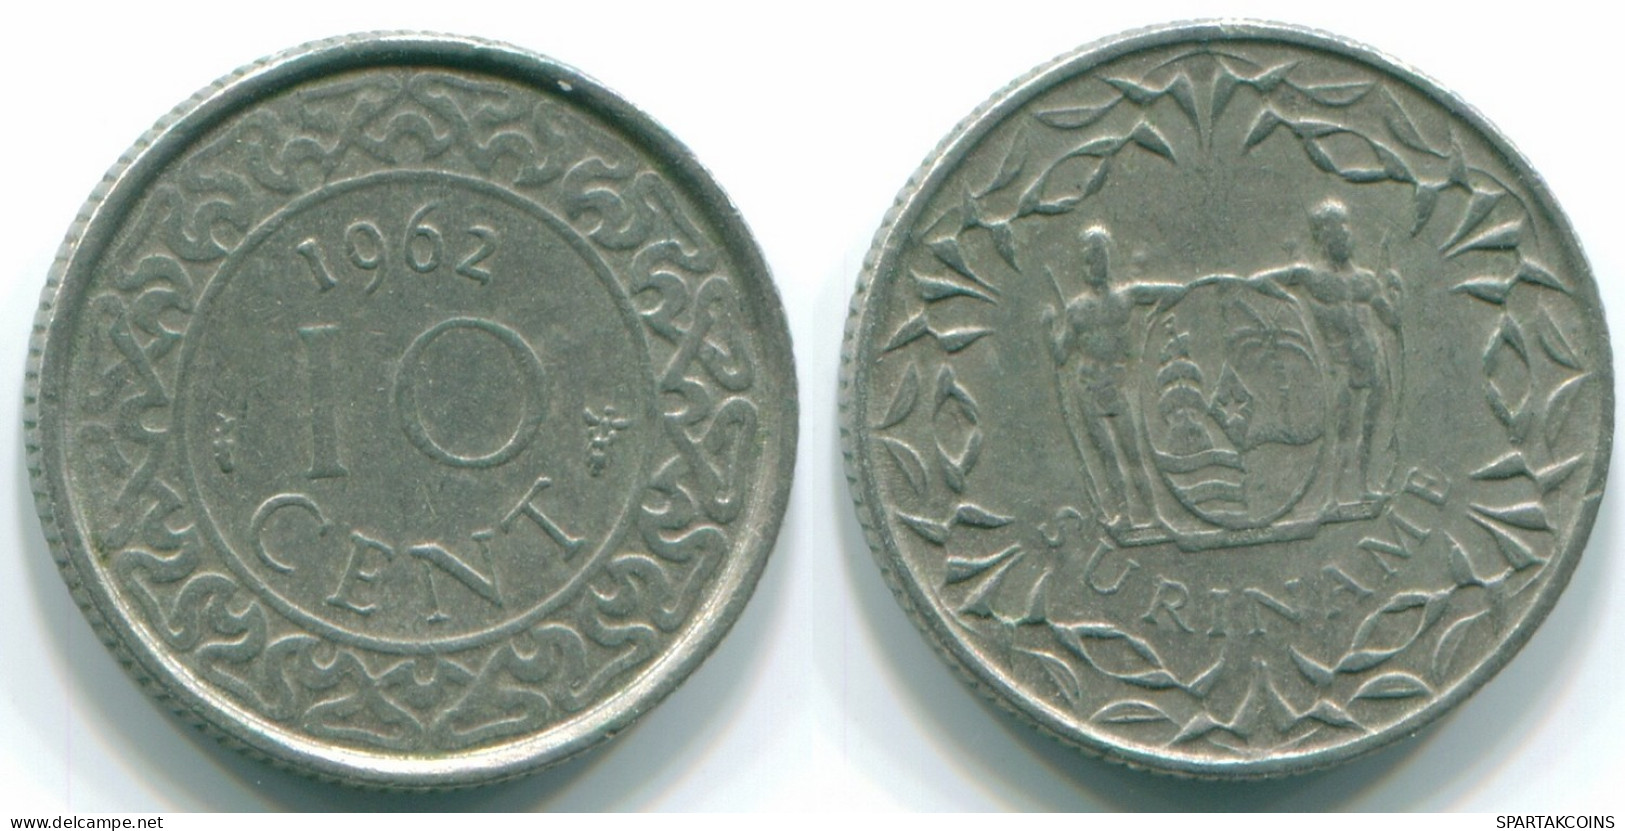 10 CENTS 1962 SURINAM NIEDERLANDE Nickel Koloniale Münze #S13222.D.A - Suriname 1975 - ...